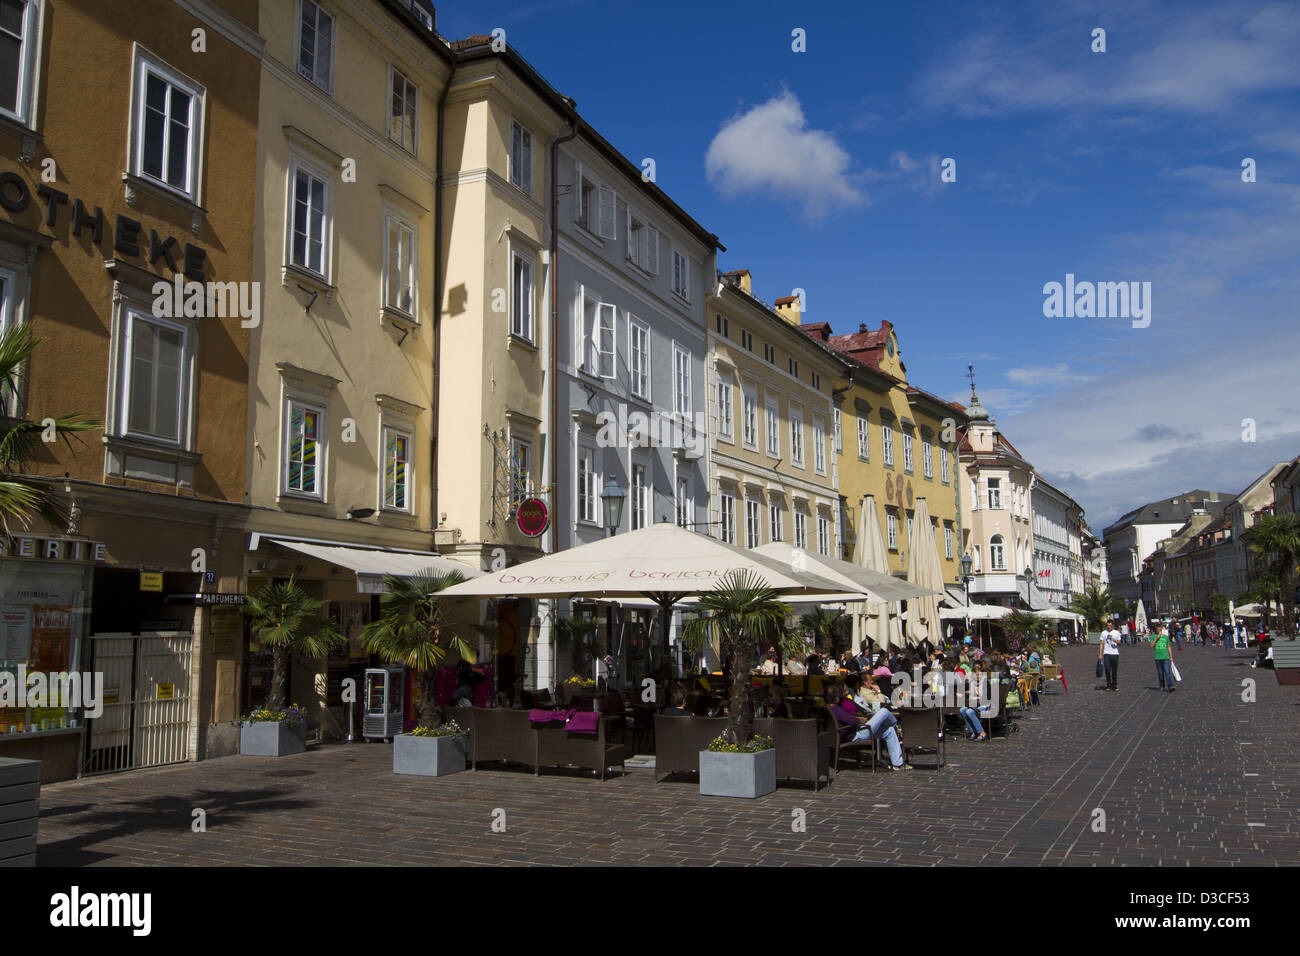 Austria, Carinthia, Klagenfurt Am Worthersee, Alter Platz, Restaurant Stock Photo